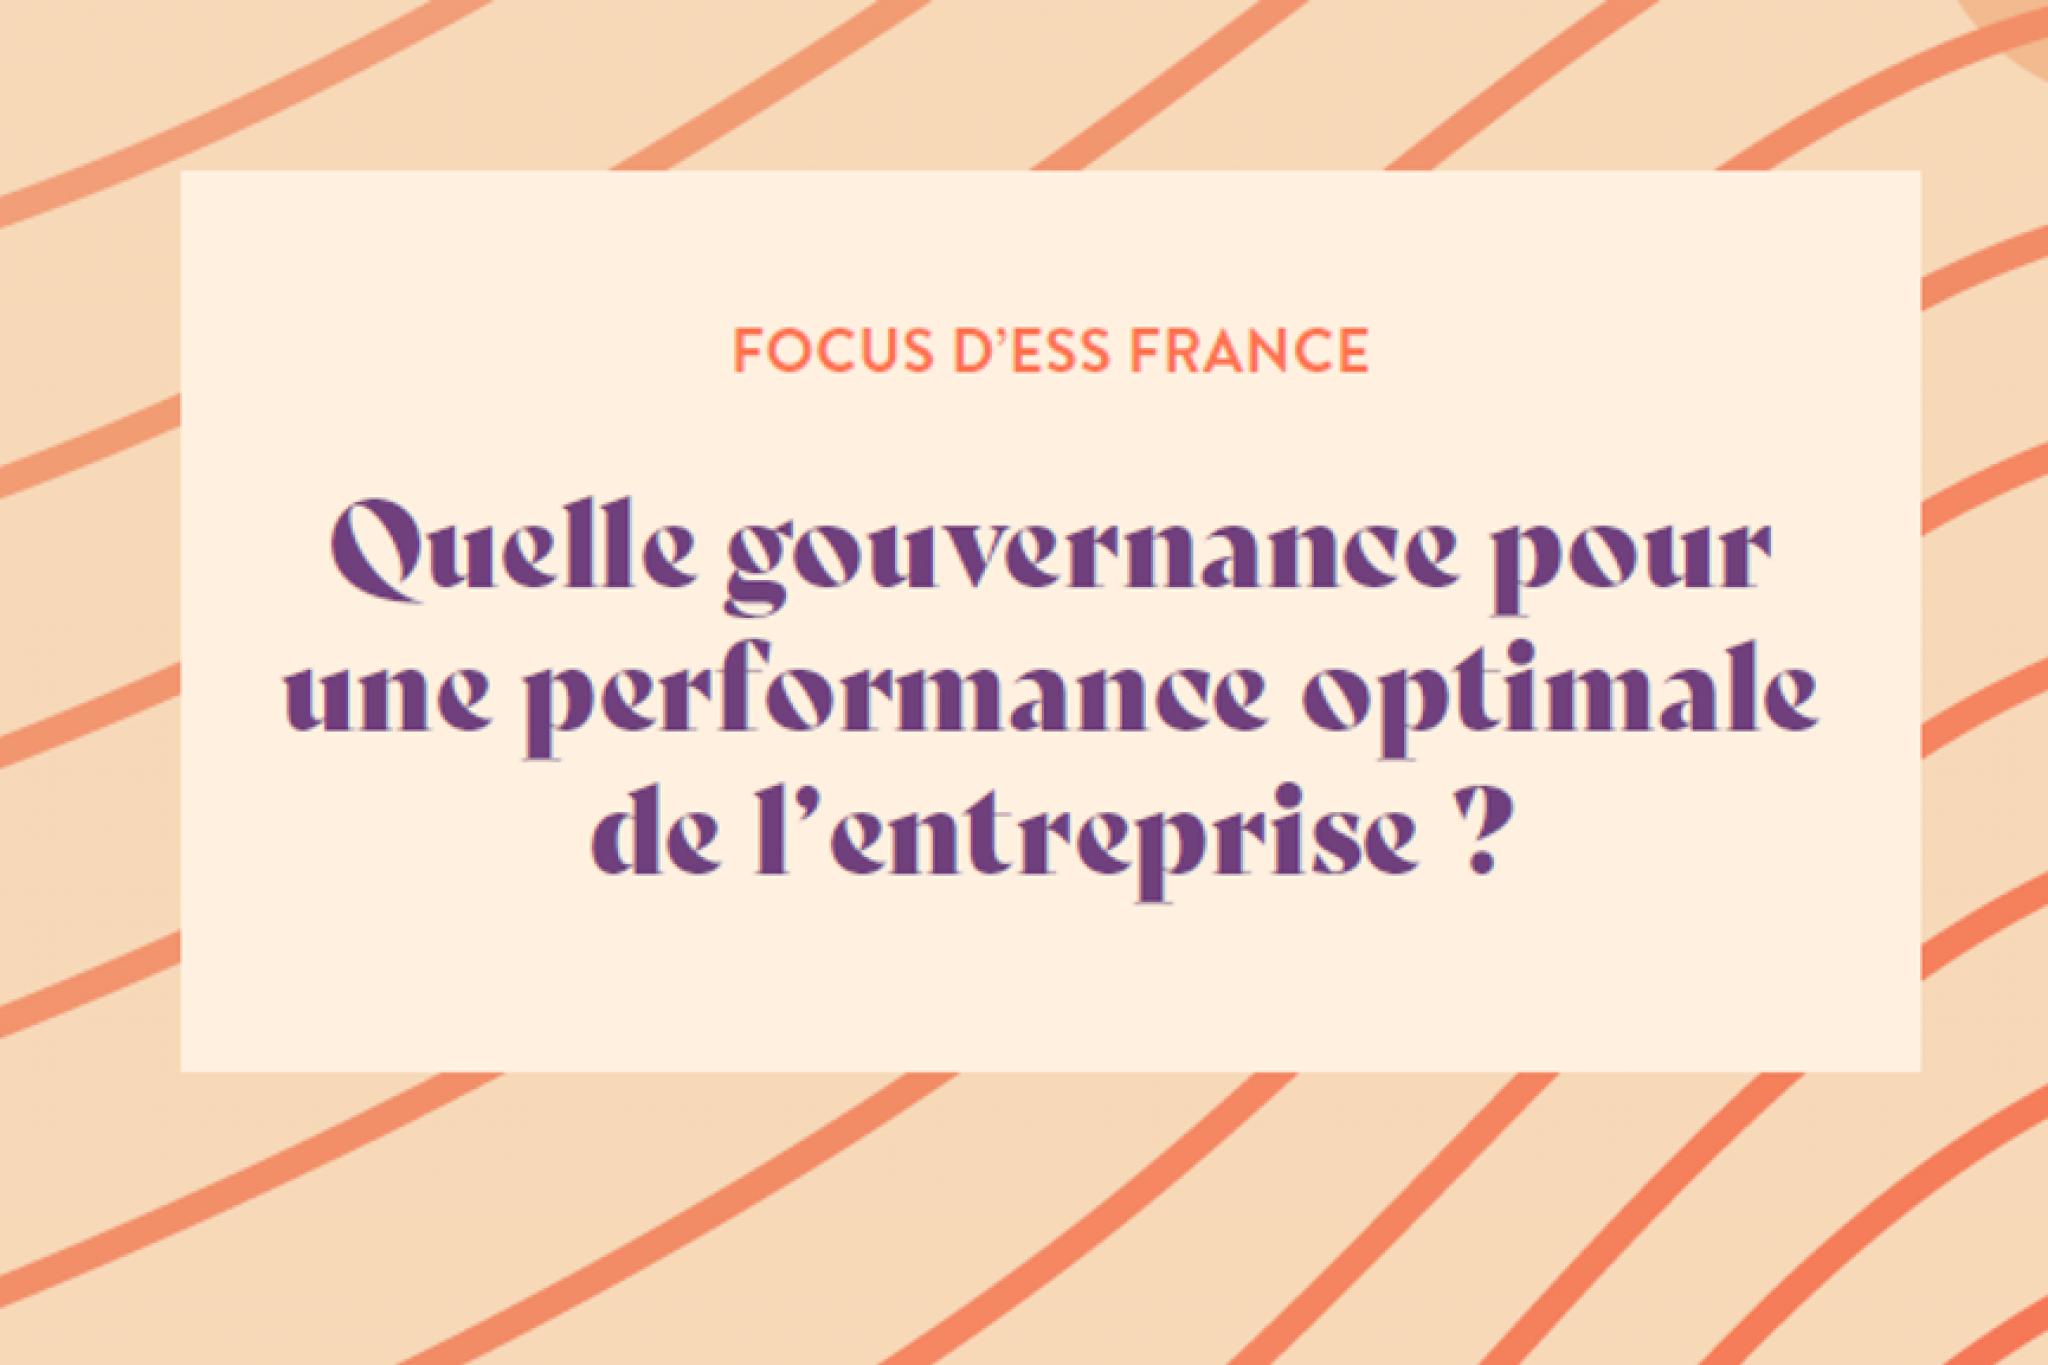 Focus d'ESS France : Quelle gouvernance pour une performance optimale de l’entreprise ?